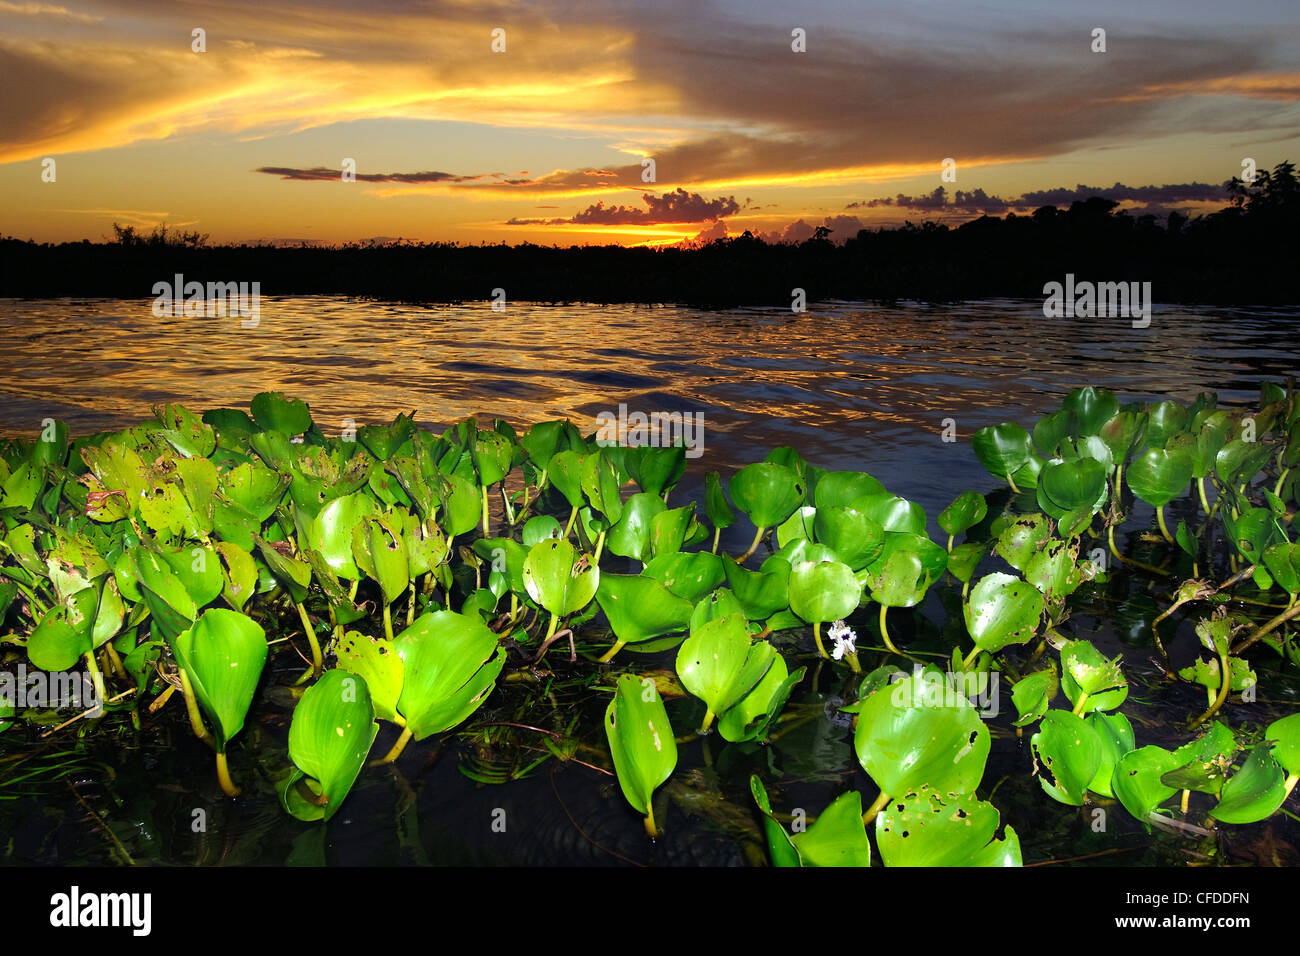 Jacinthe d'eau (Eichhornia crassipes), les zones humides du Pantanal, au sud-ouest de l'Amérique du Sud, Brésil Banque D'Images